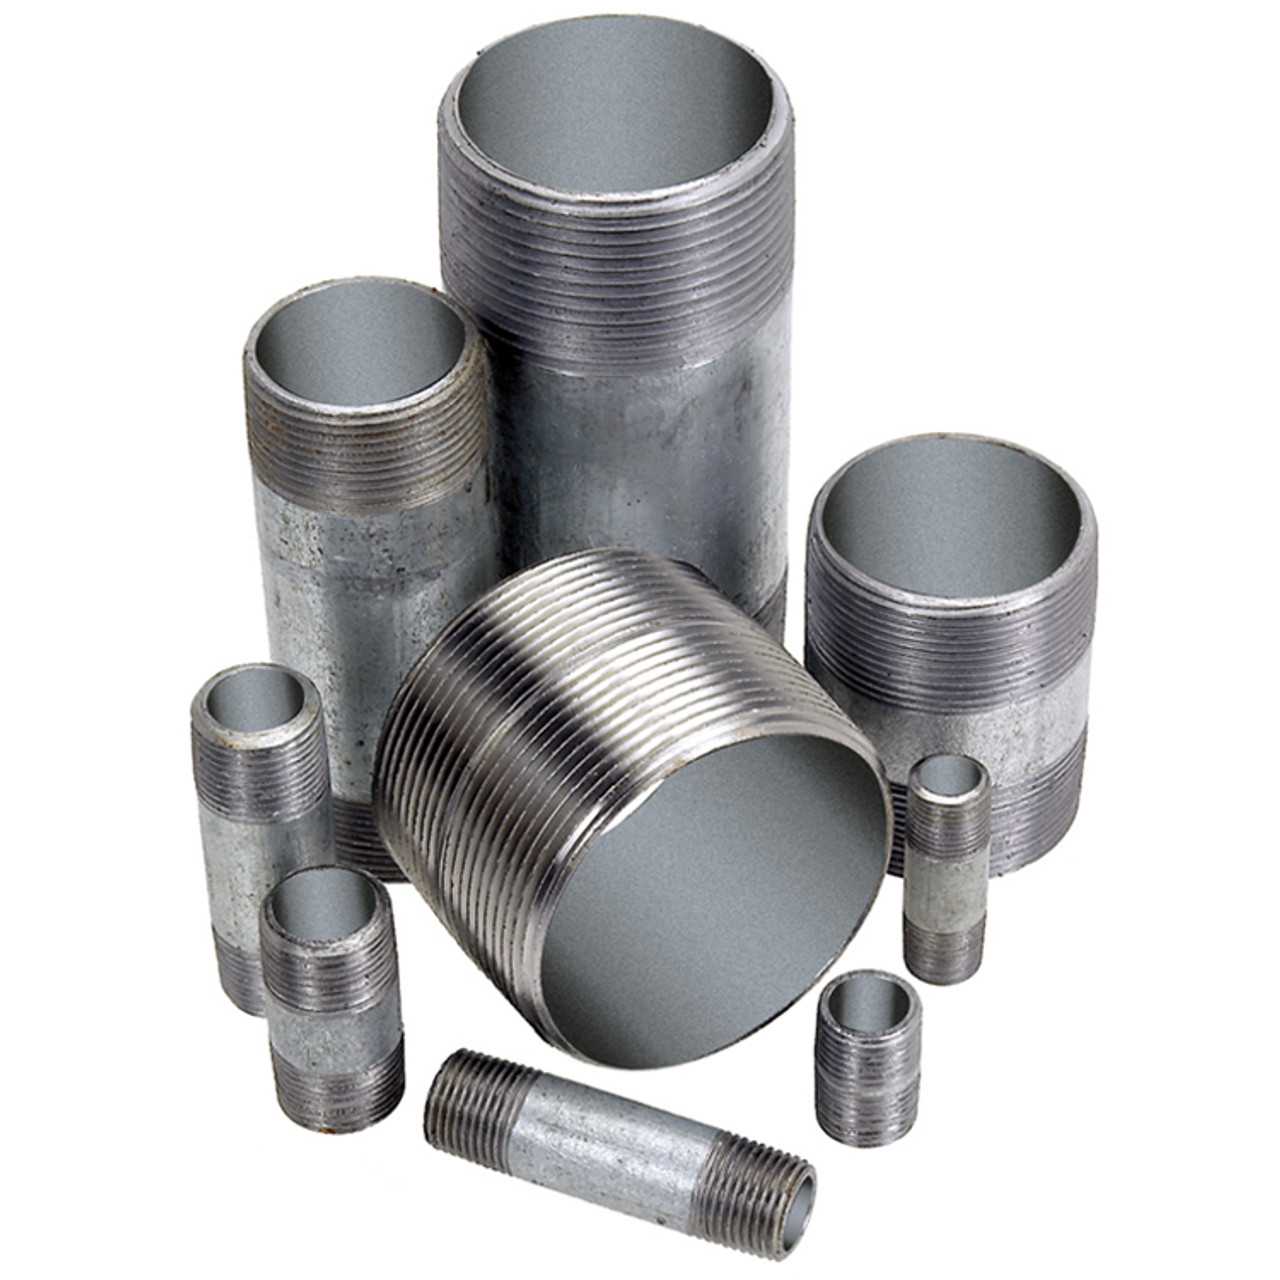 1 x 4" Sch. 40 Galvanized Steel Male NPT Nipple   G1616G-100X4